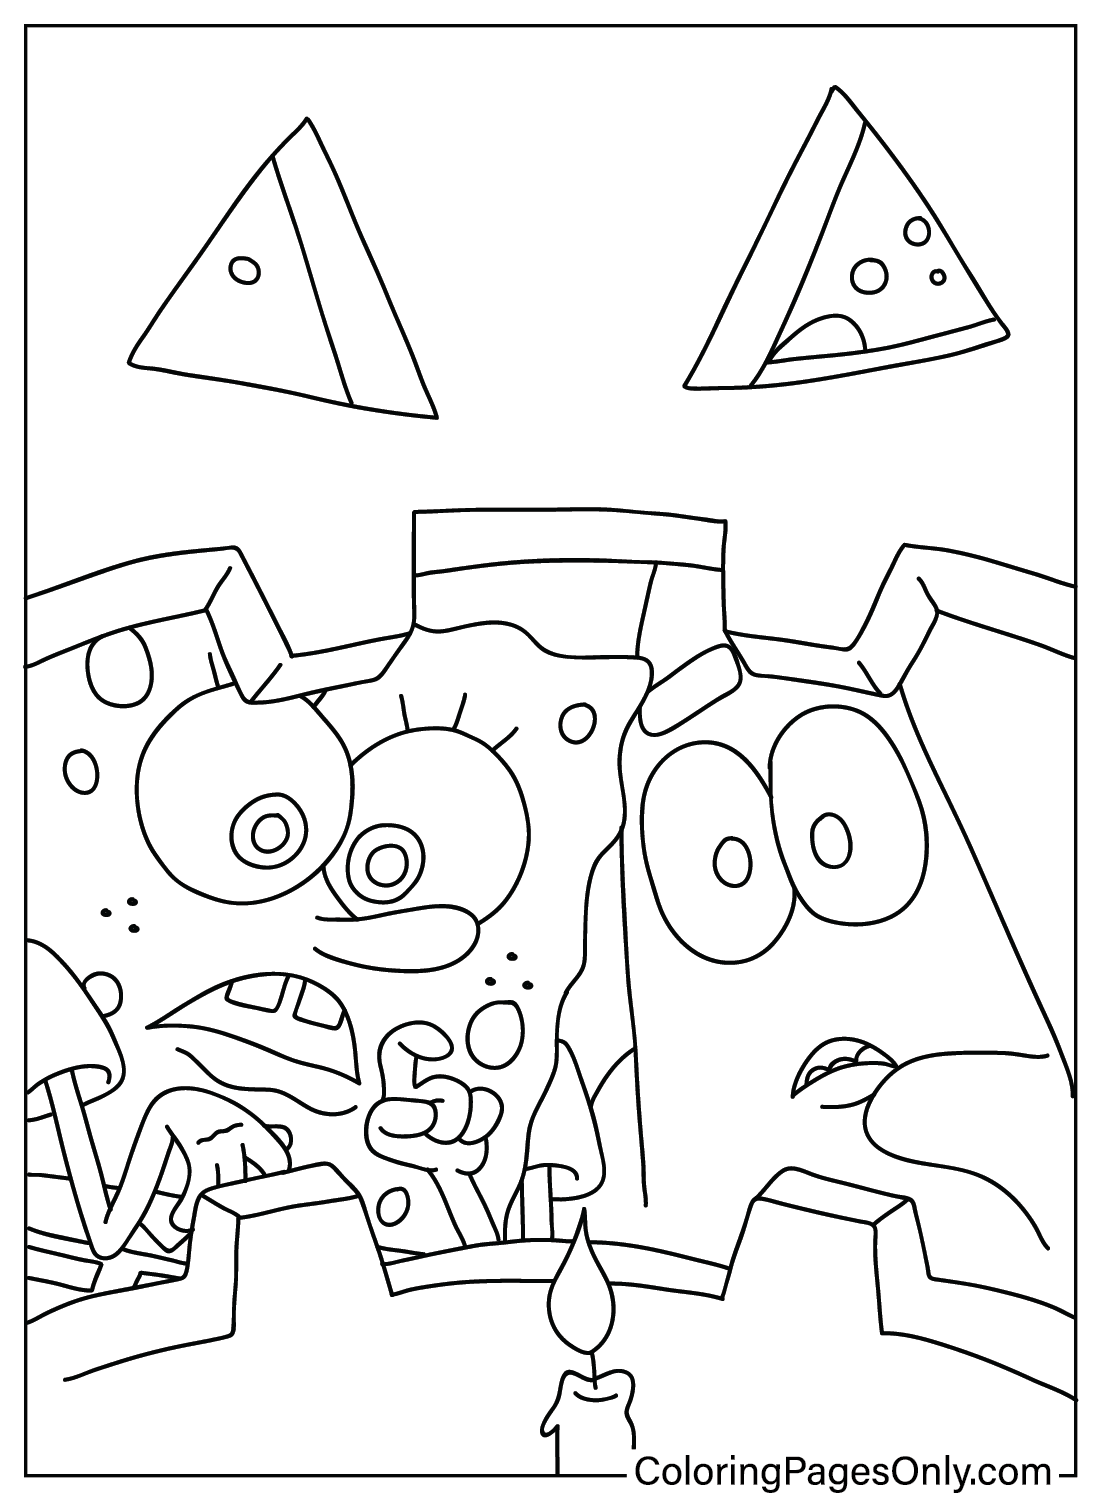 Раскраска Губка Боб Хэллоуин для взрослых из мультфильма «Губка Боб Хэллоуин»